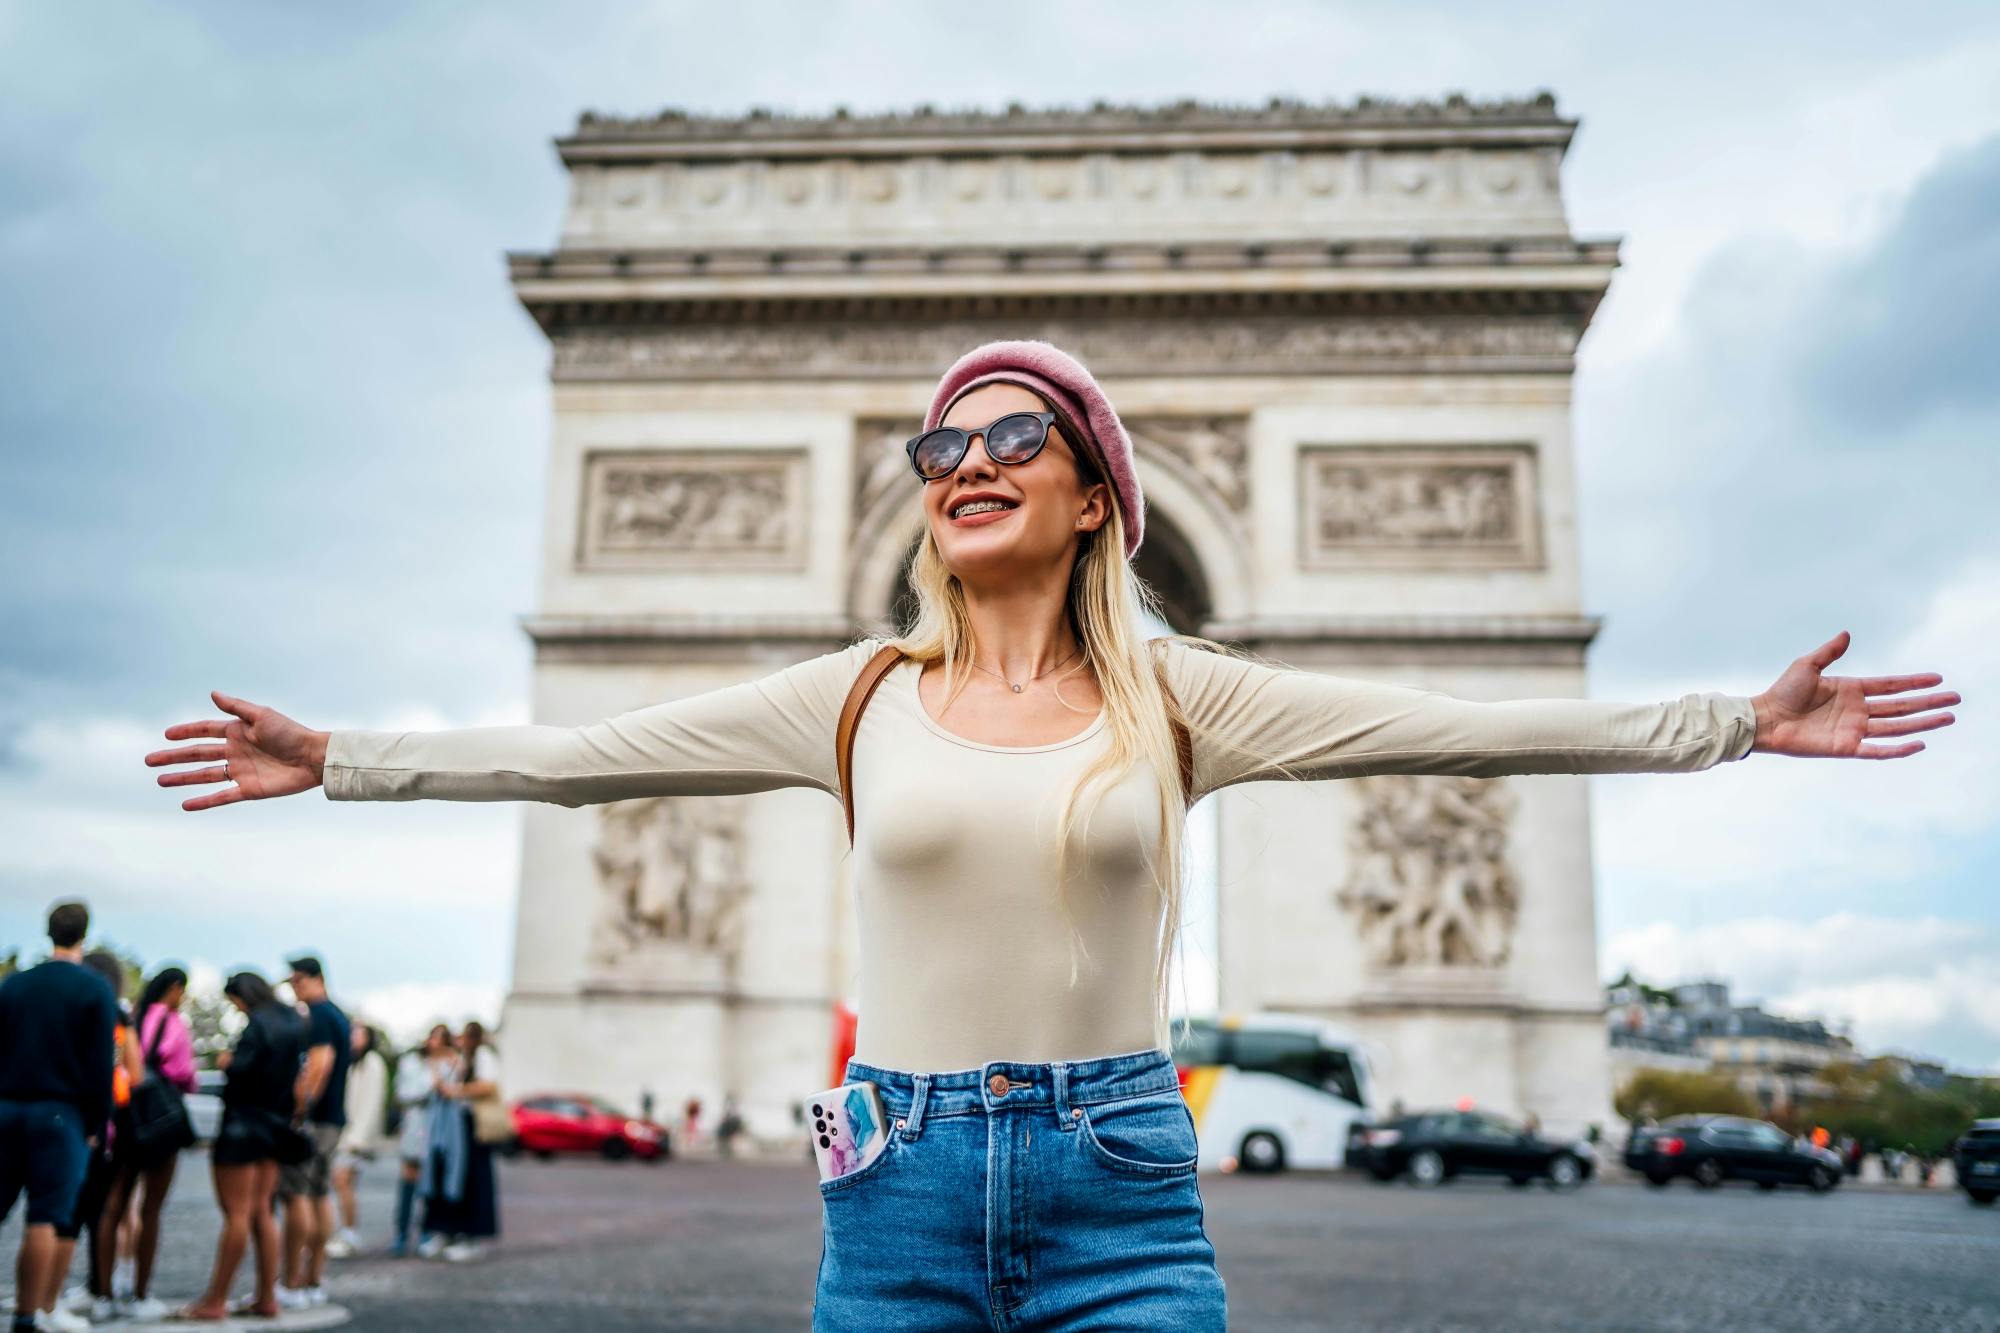 Excursão fotográfica em Paris Os 3 Grandes: Torre Eiffel, Arco do Triunfo e Sena